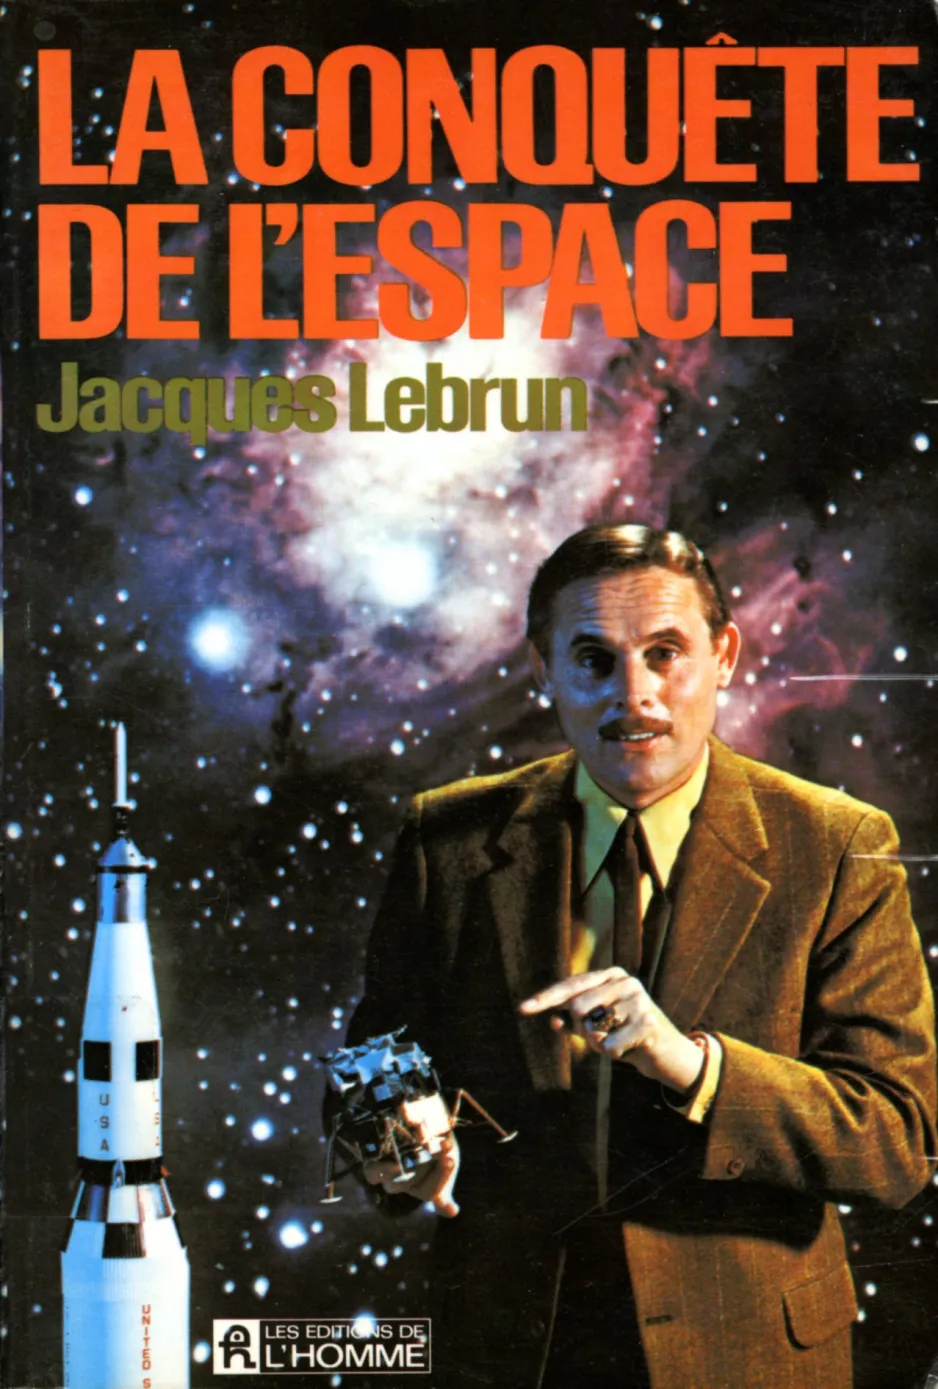 La Conquête de l’espace, by Jacques Lebrun